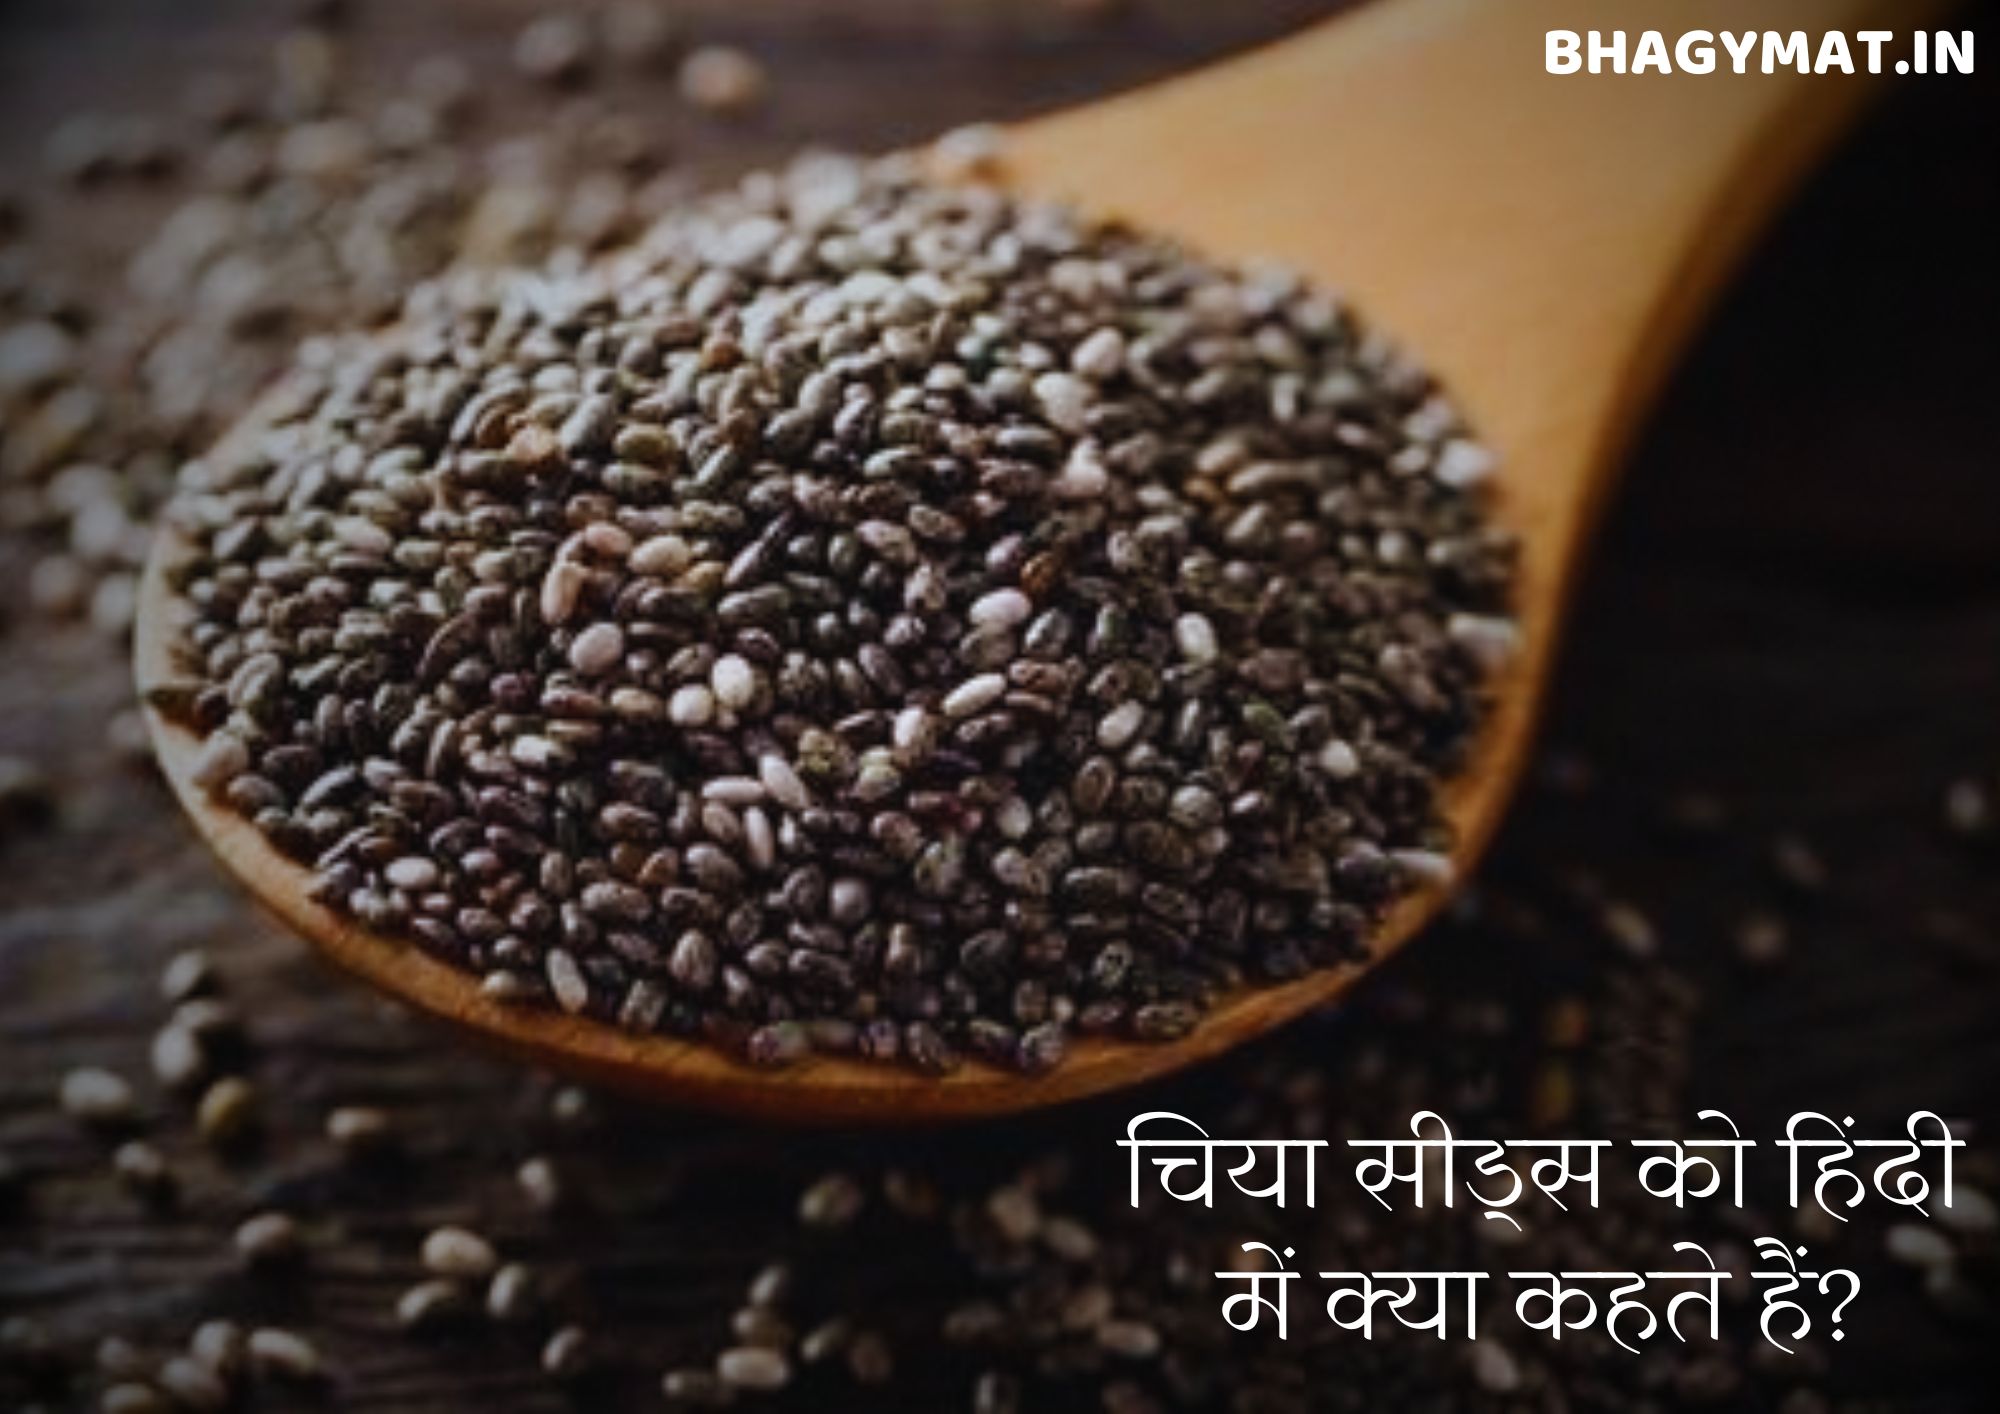 चिया सीड्स को हिंदी में क्या कहते हैं (Chia Seeds In Hindi Name)